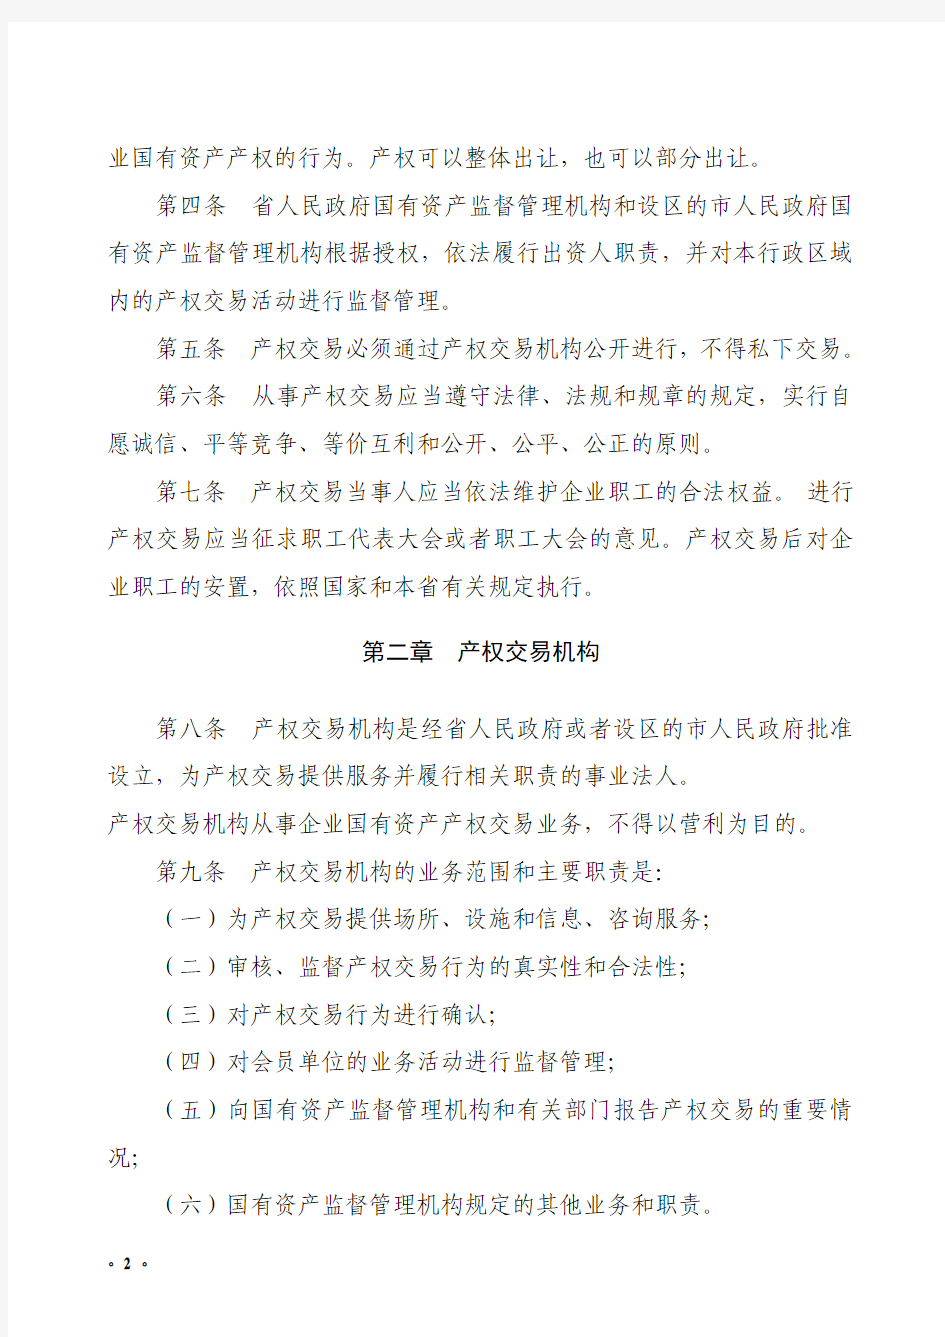 河北省企业国有资产产权交易管理暂行规定(6号令)